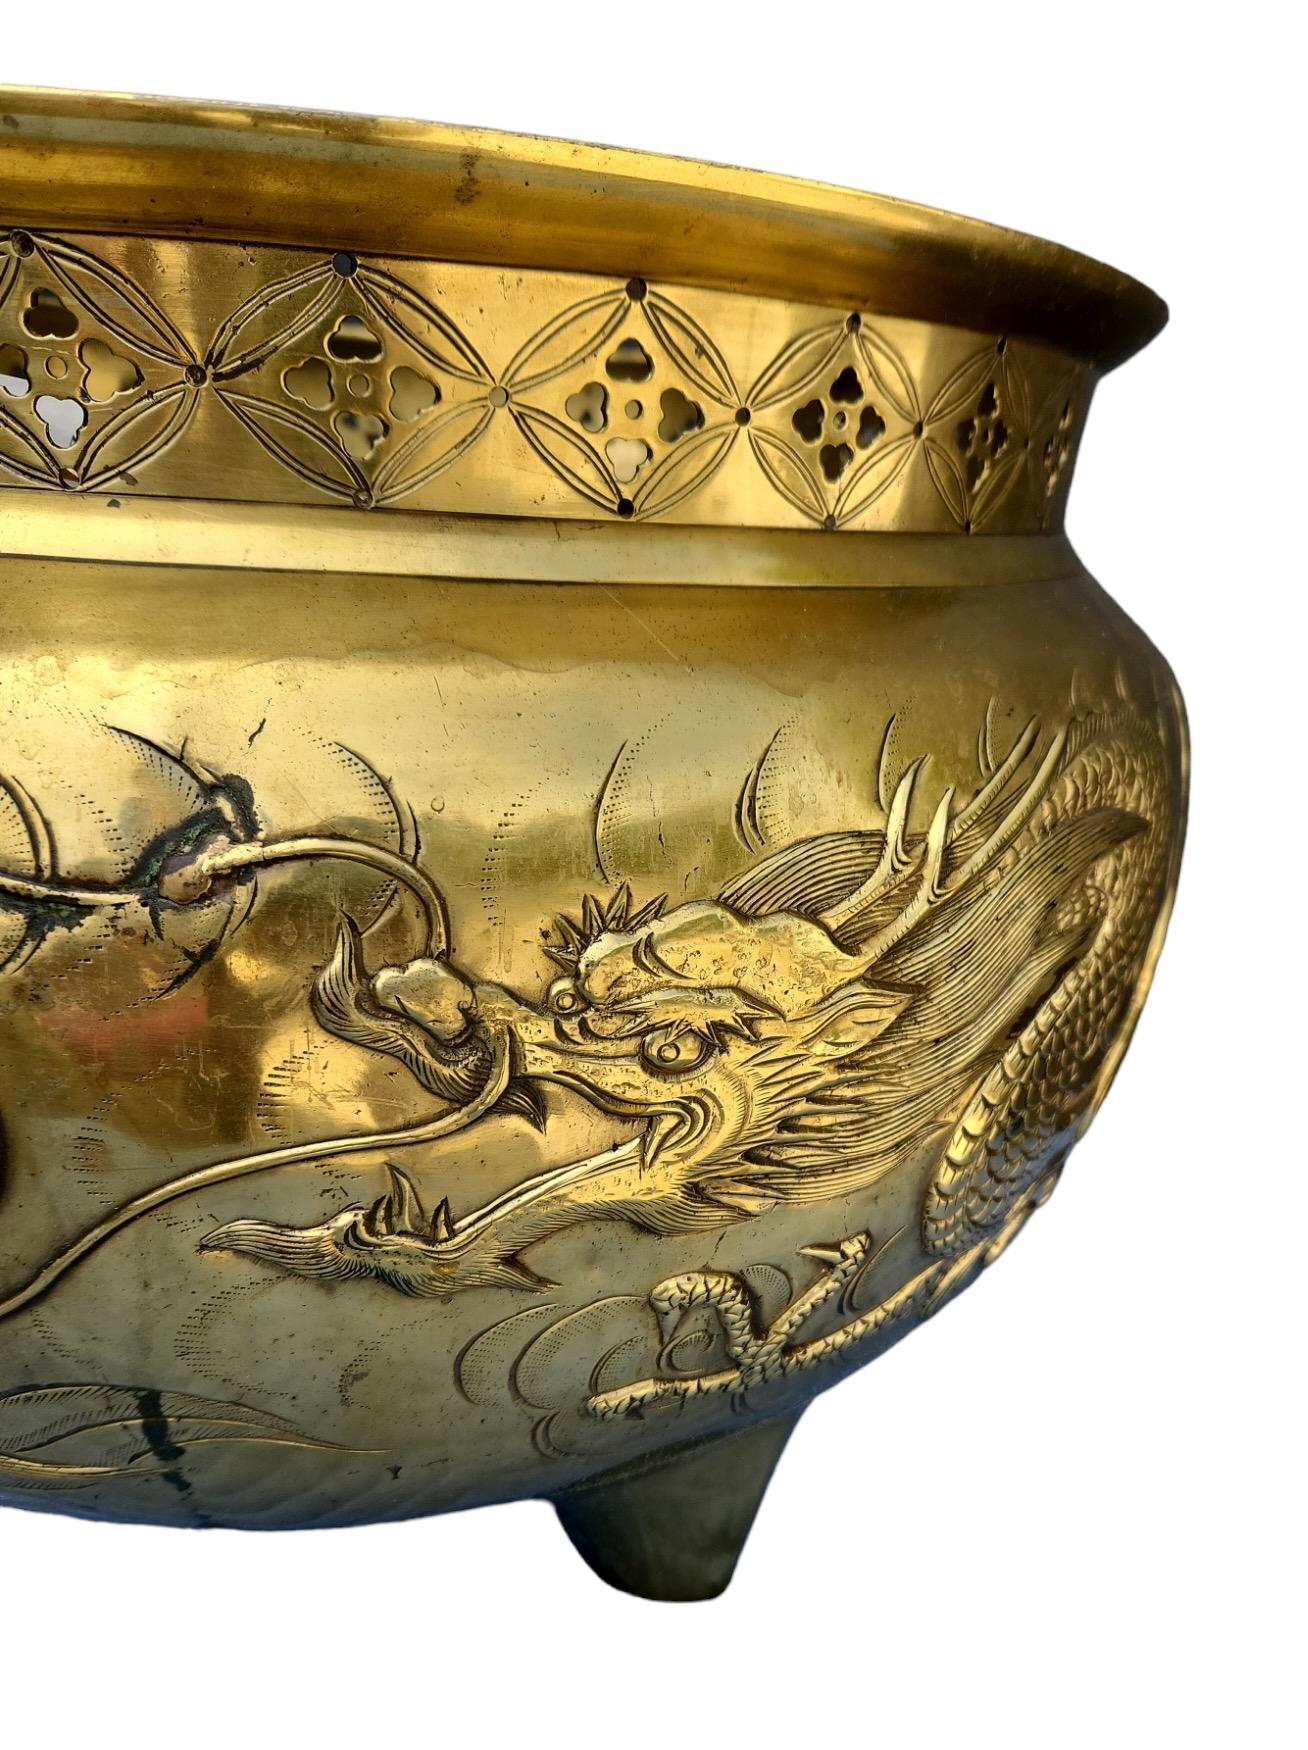 Jardineries en laiton (peut-être en bronze) des années 1900 avec un motif de dragon finement détaillé et un bord percé.